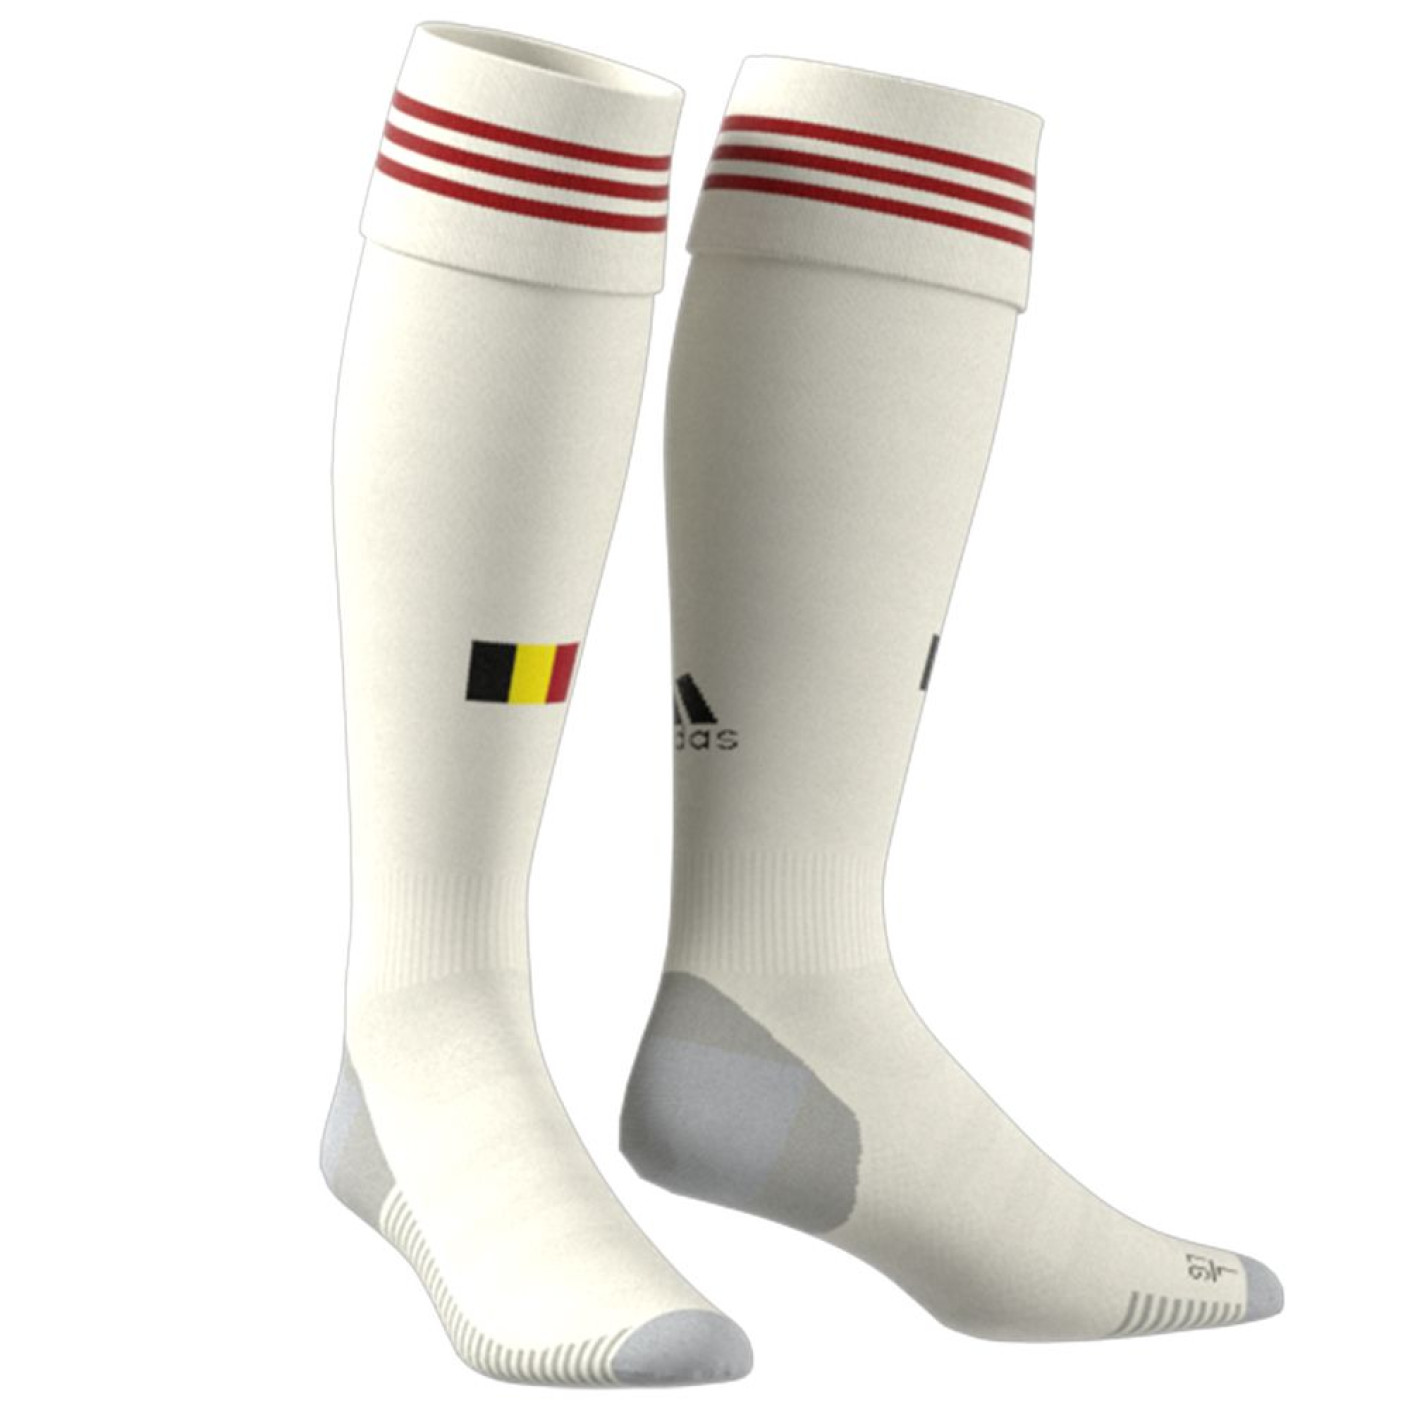 Chaussettes de football adidas Belgium 2020